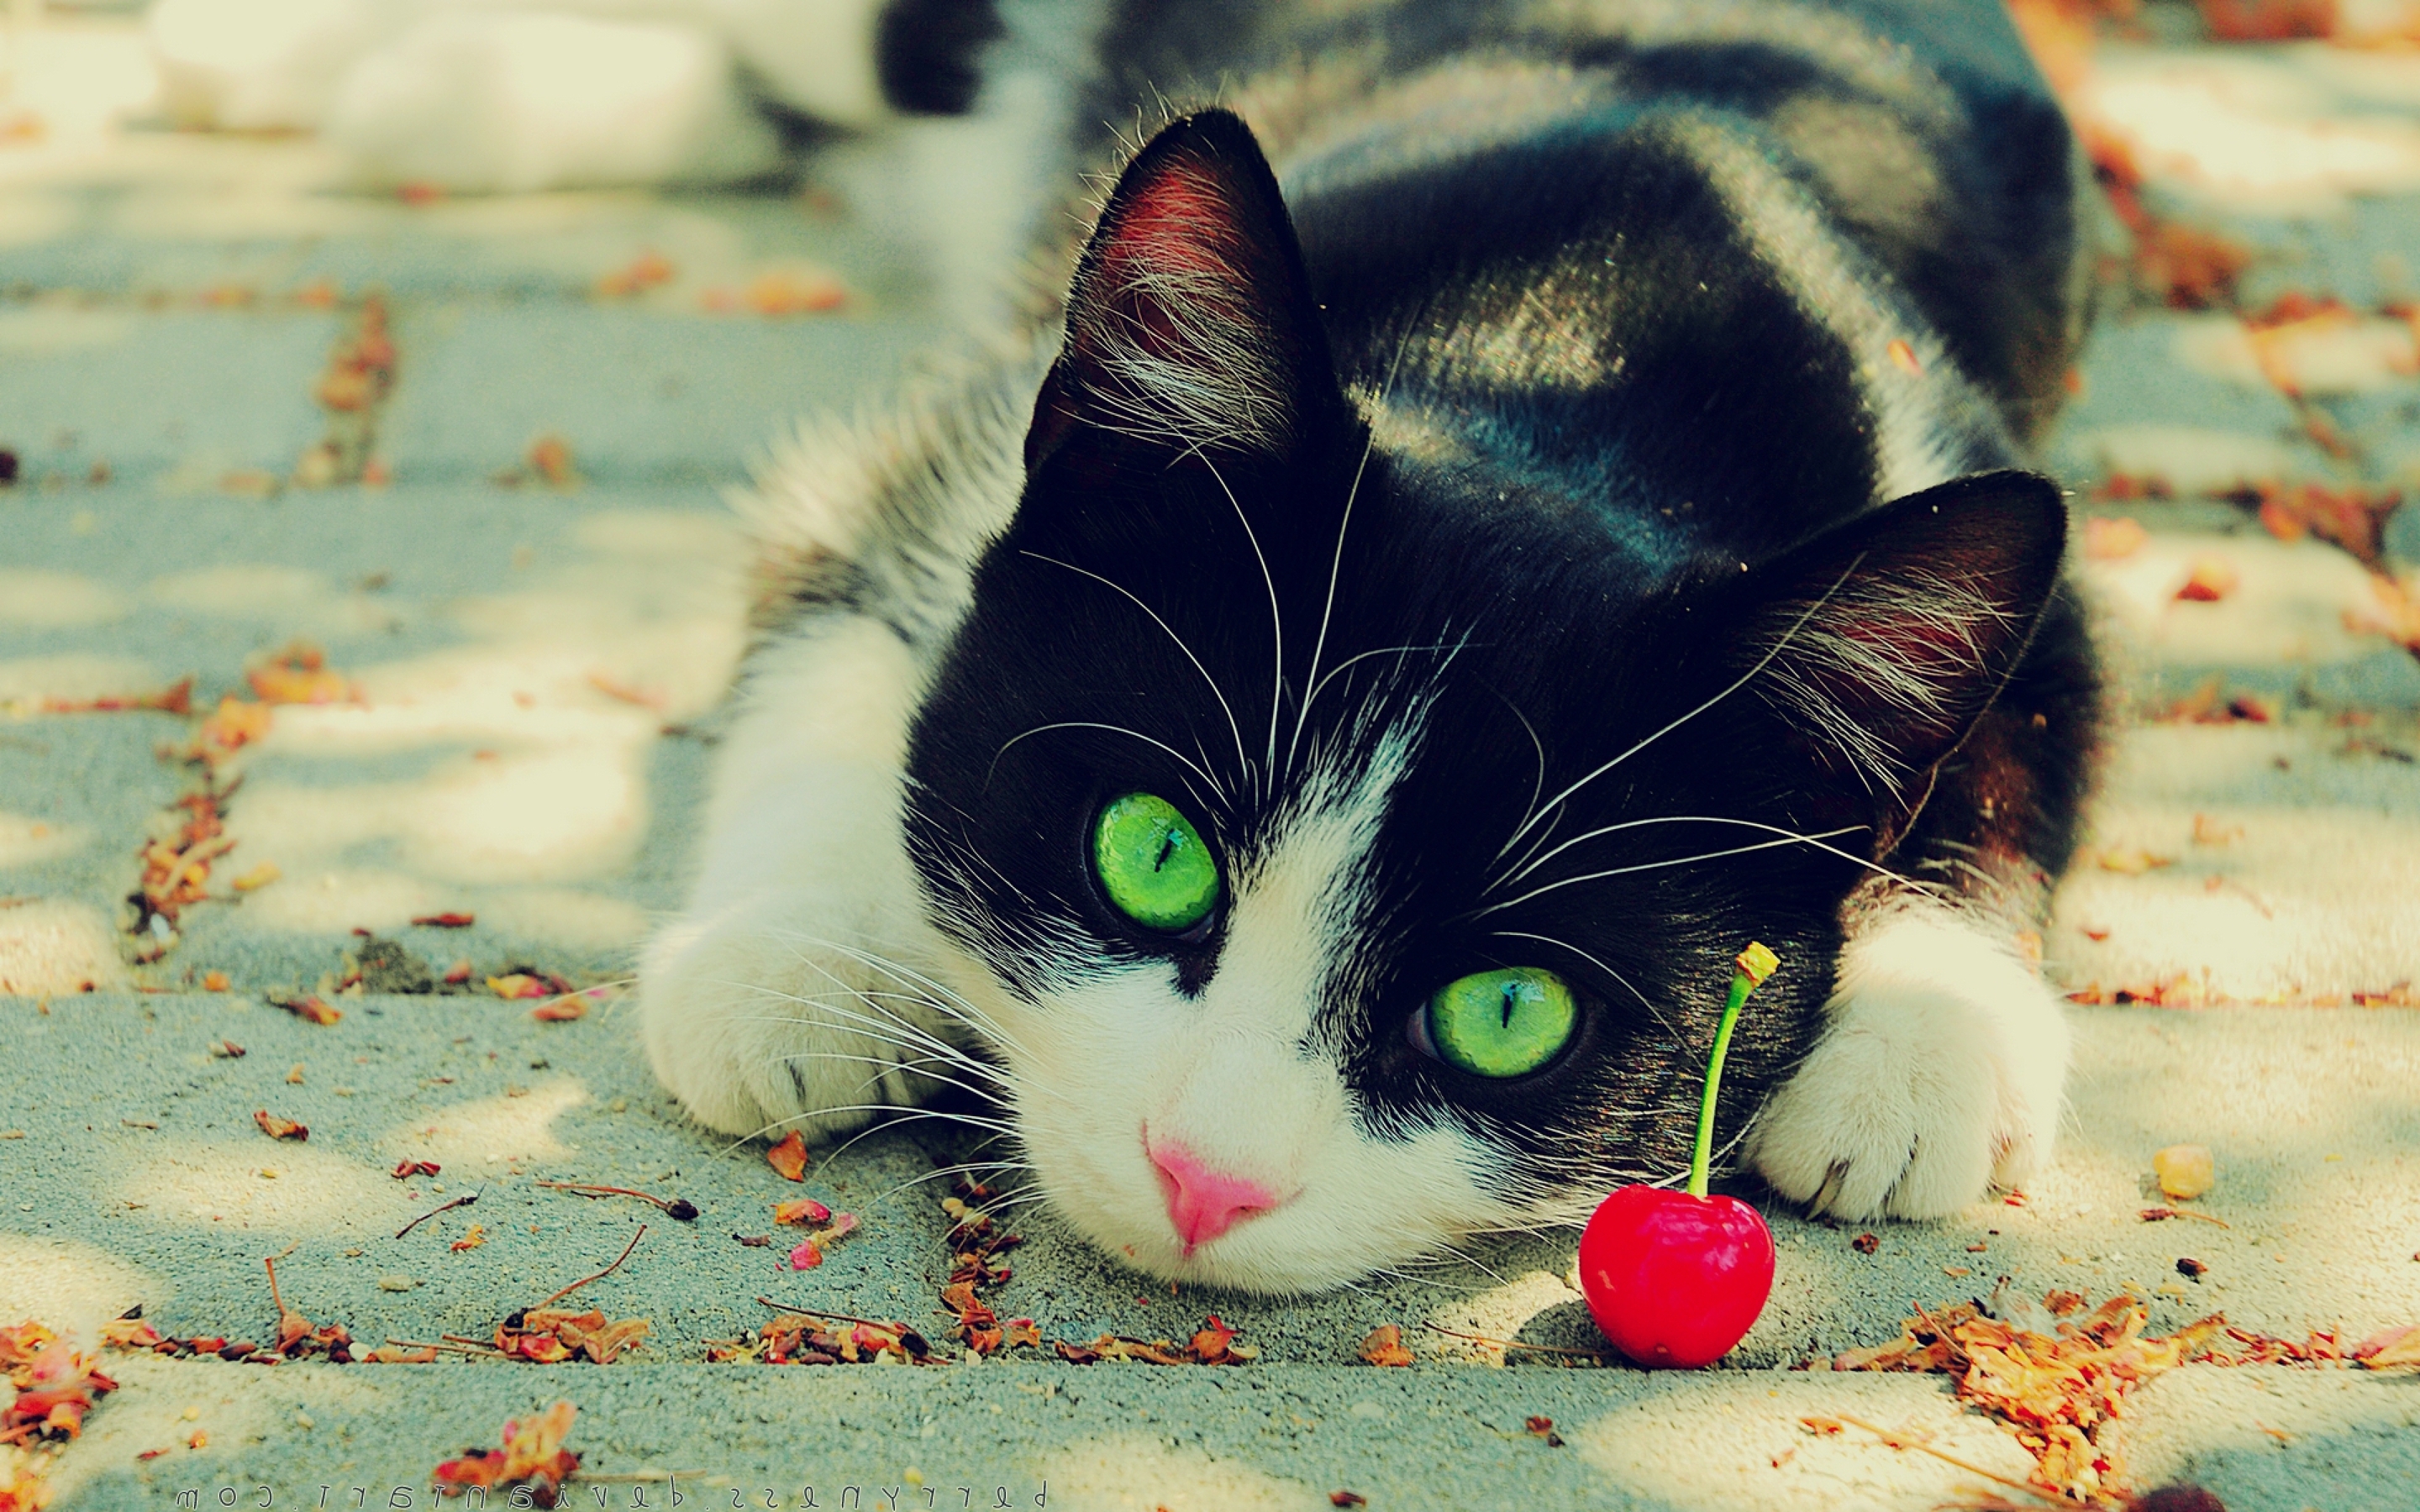 Картинка: Кошка, взгляд, зелёные глаза, нос, усы, шерсть, вишенка